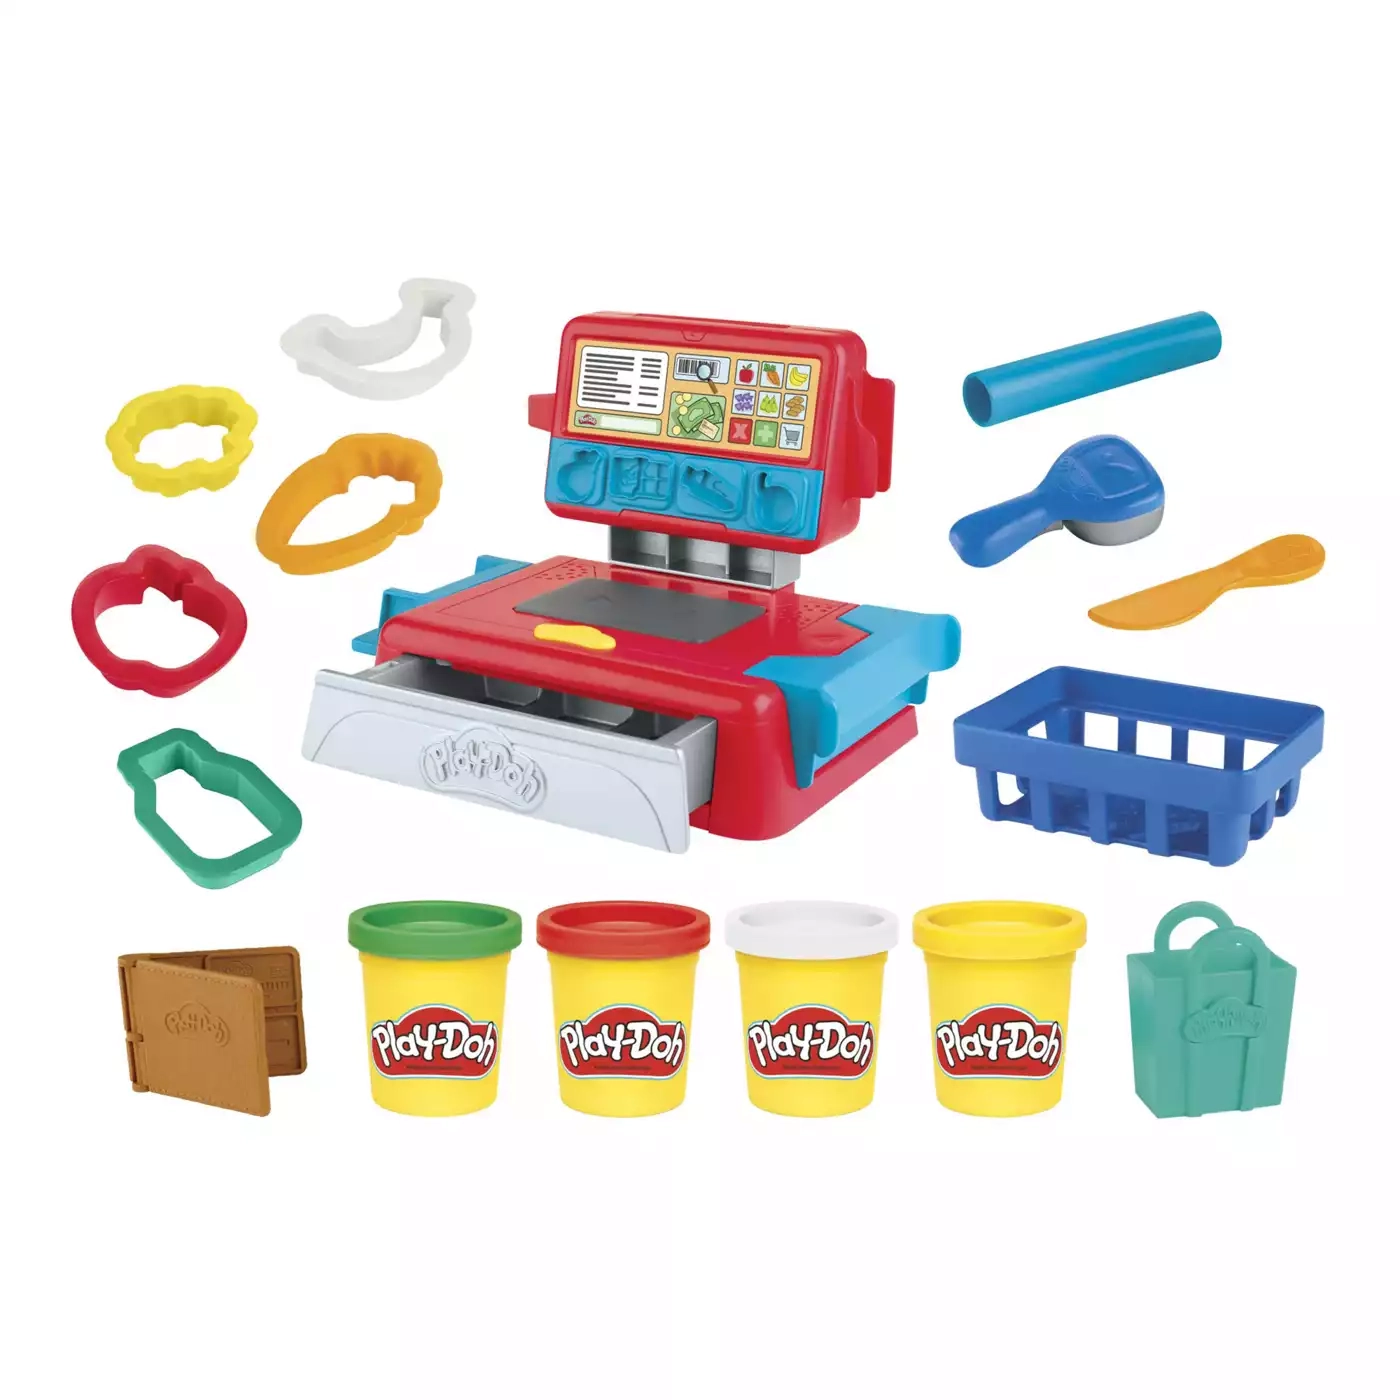 Supermarkt-Kasse Play-Doh Mehrfarbig 2000579083501 1